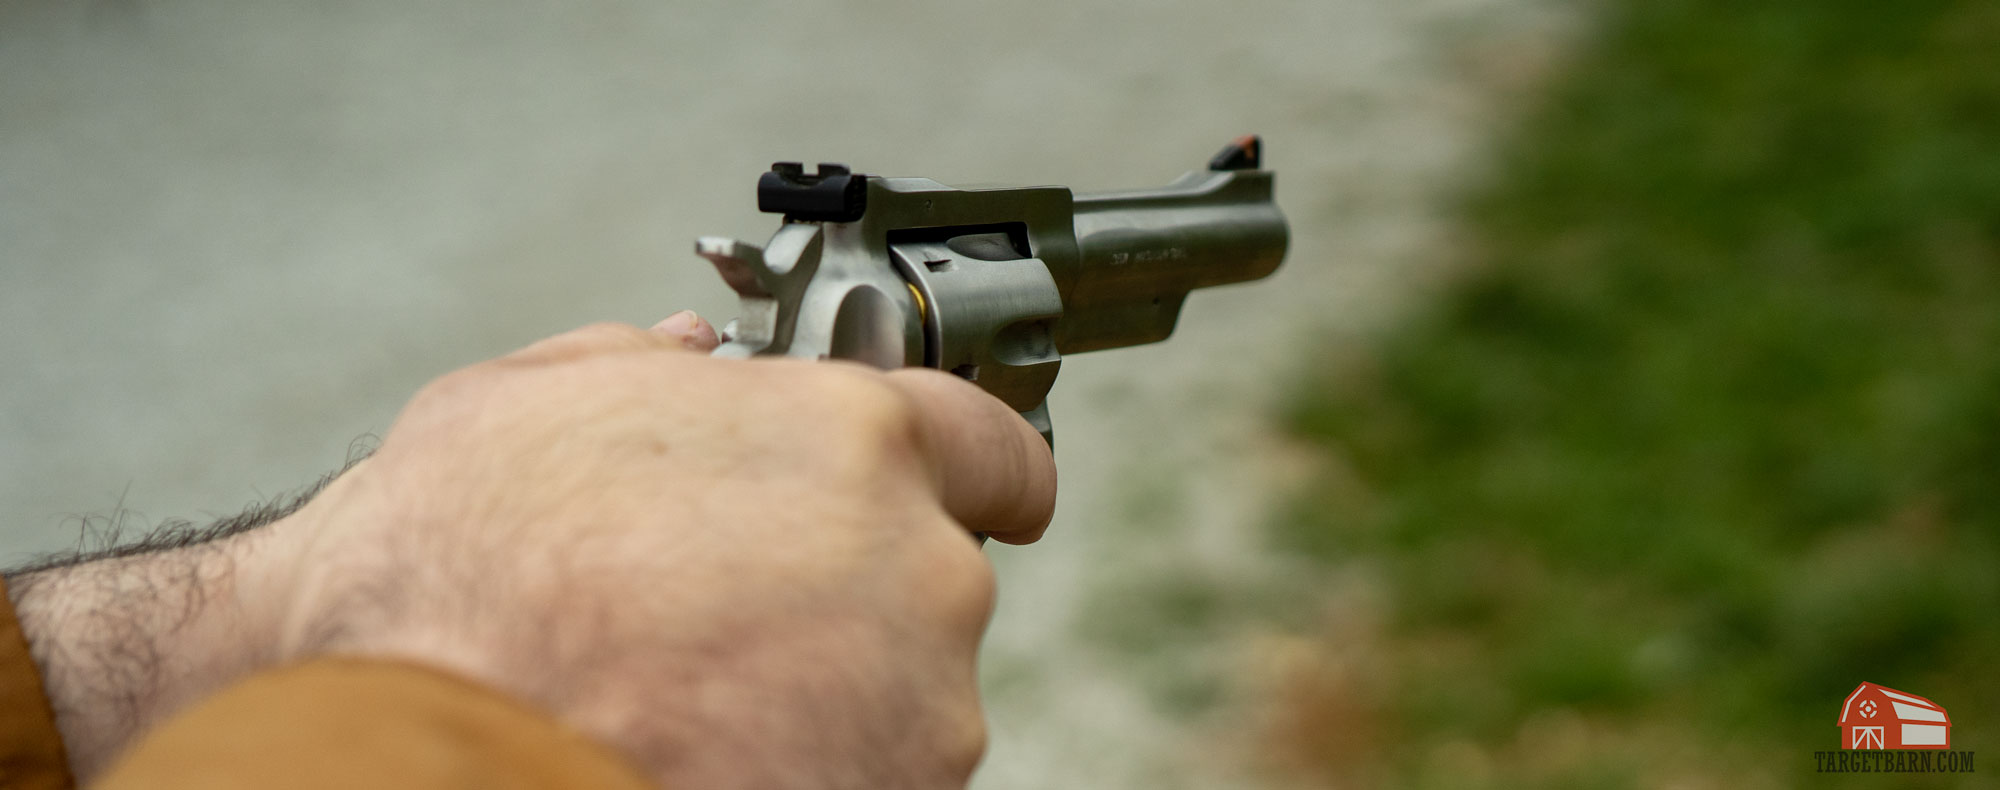 shooting a revolver